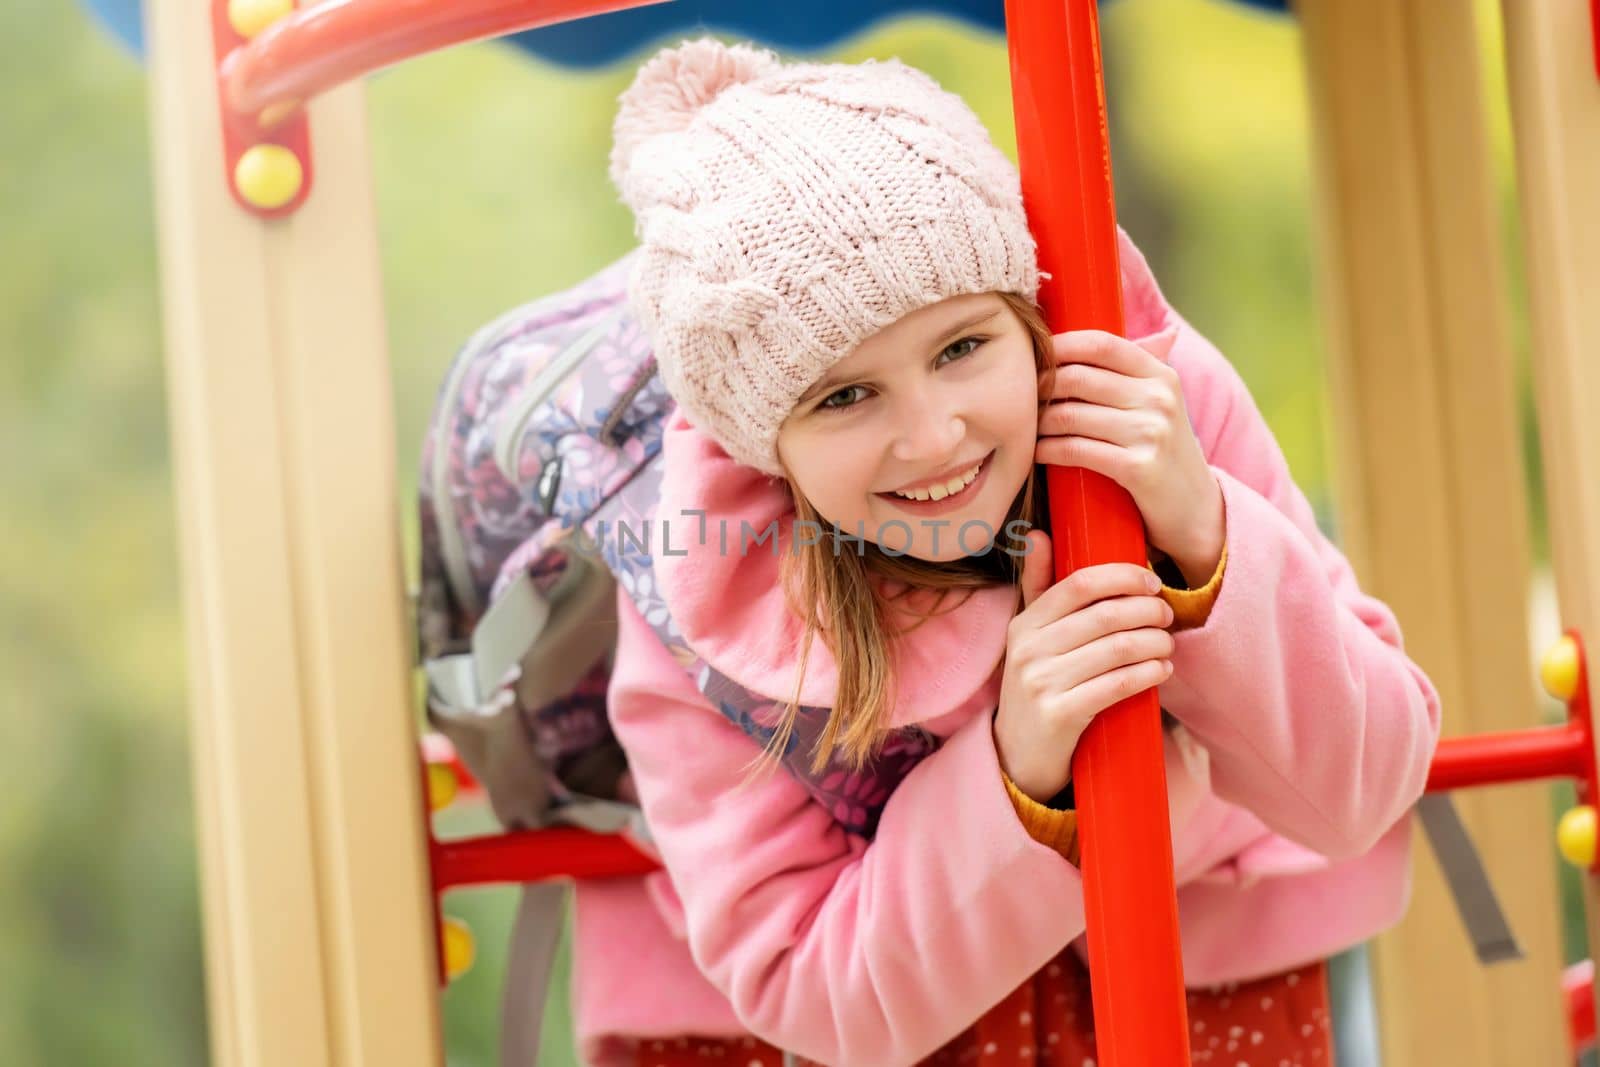 School girl on playground by GekaSkr